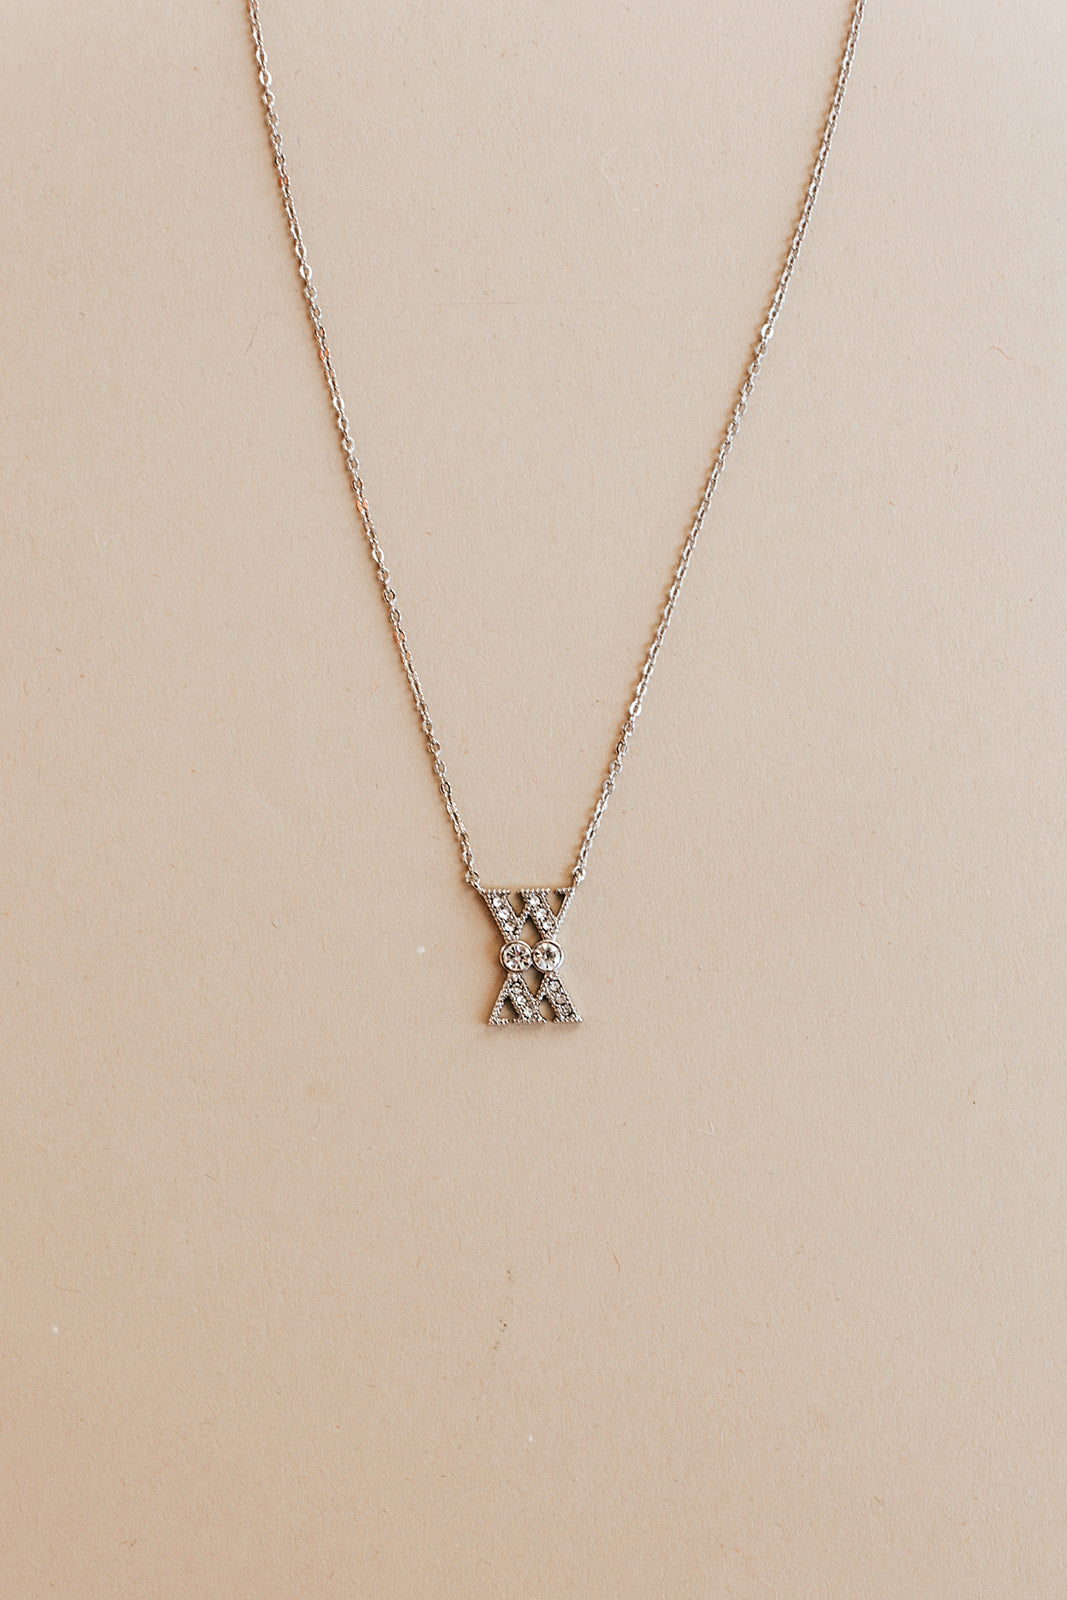 WM necklace | silver